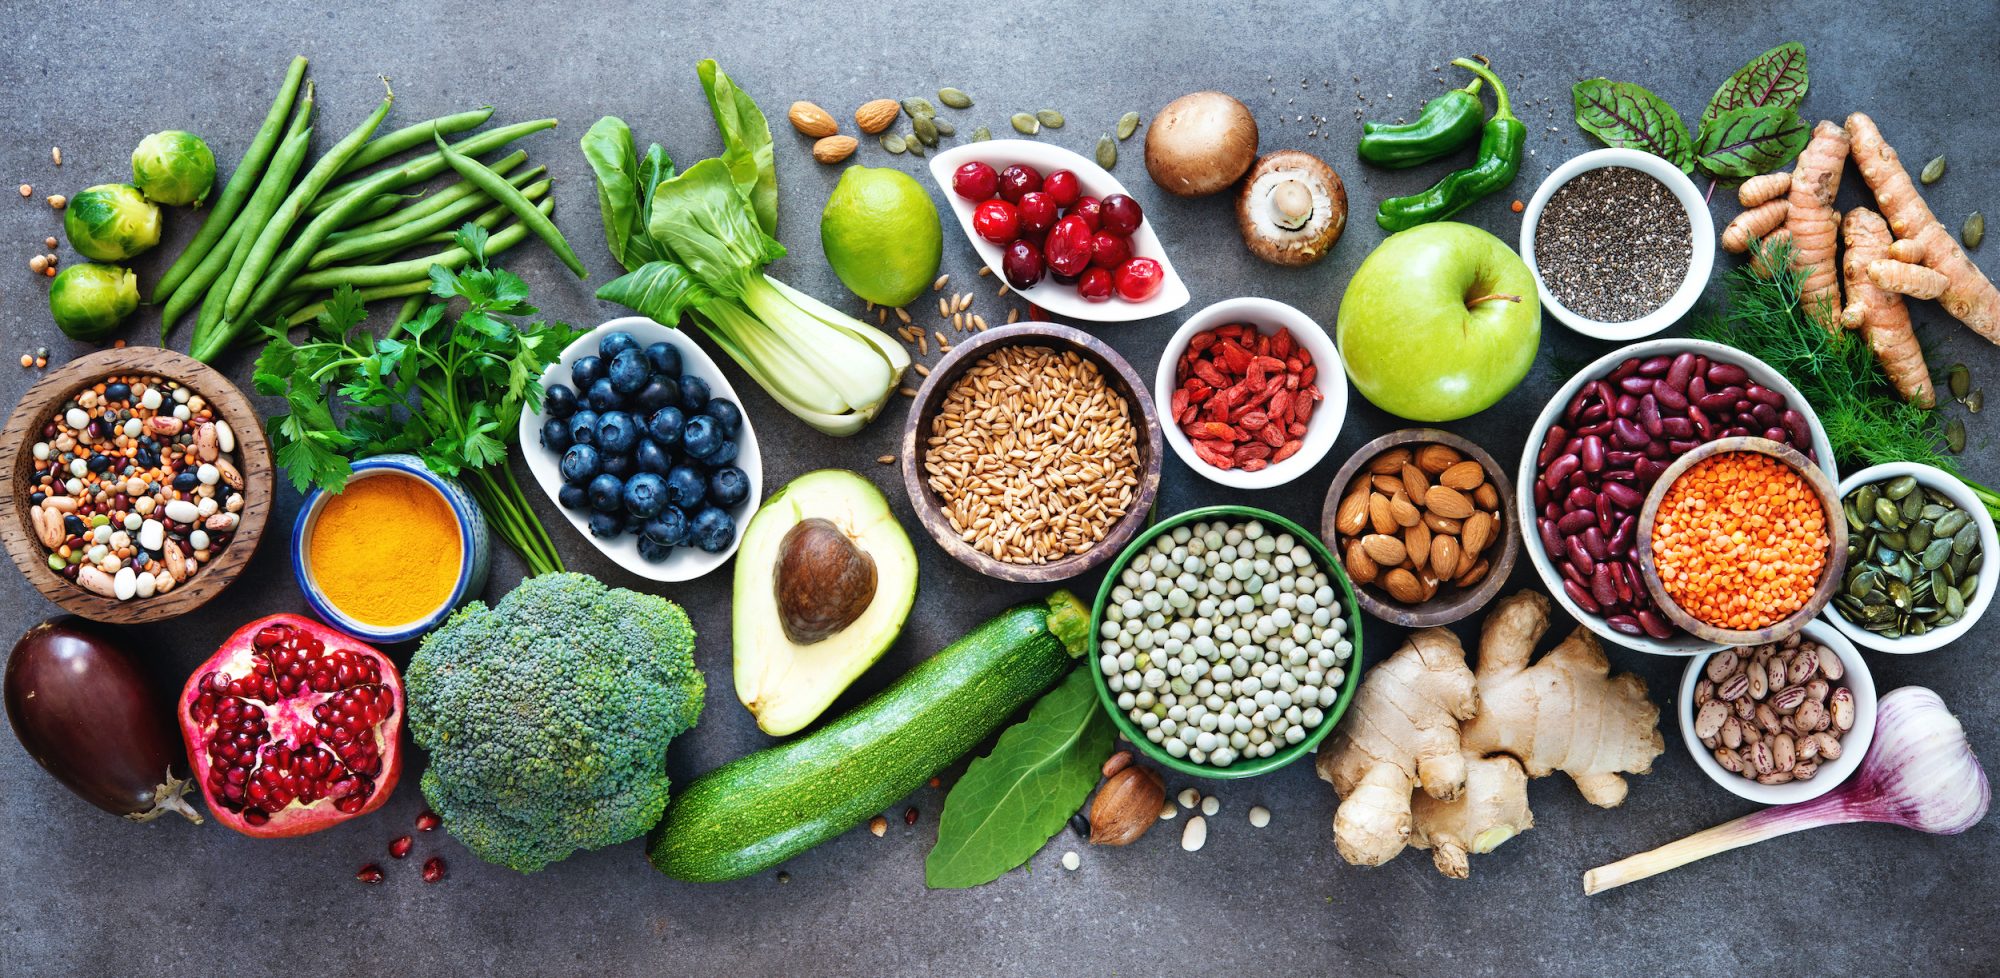 Gesunde Lebensmittel wie Obst, Gemüse, Nüsse und Hülsenfrüchte